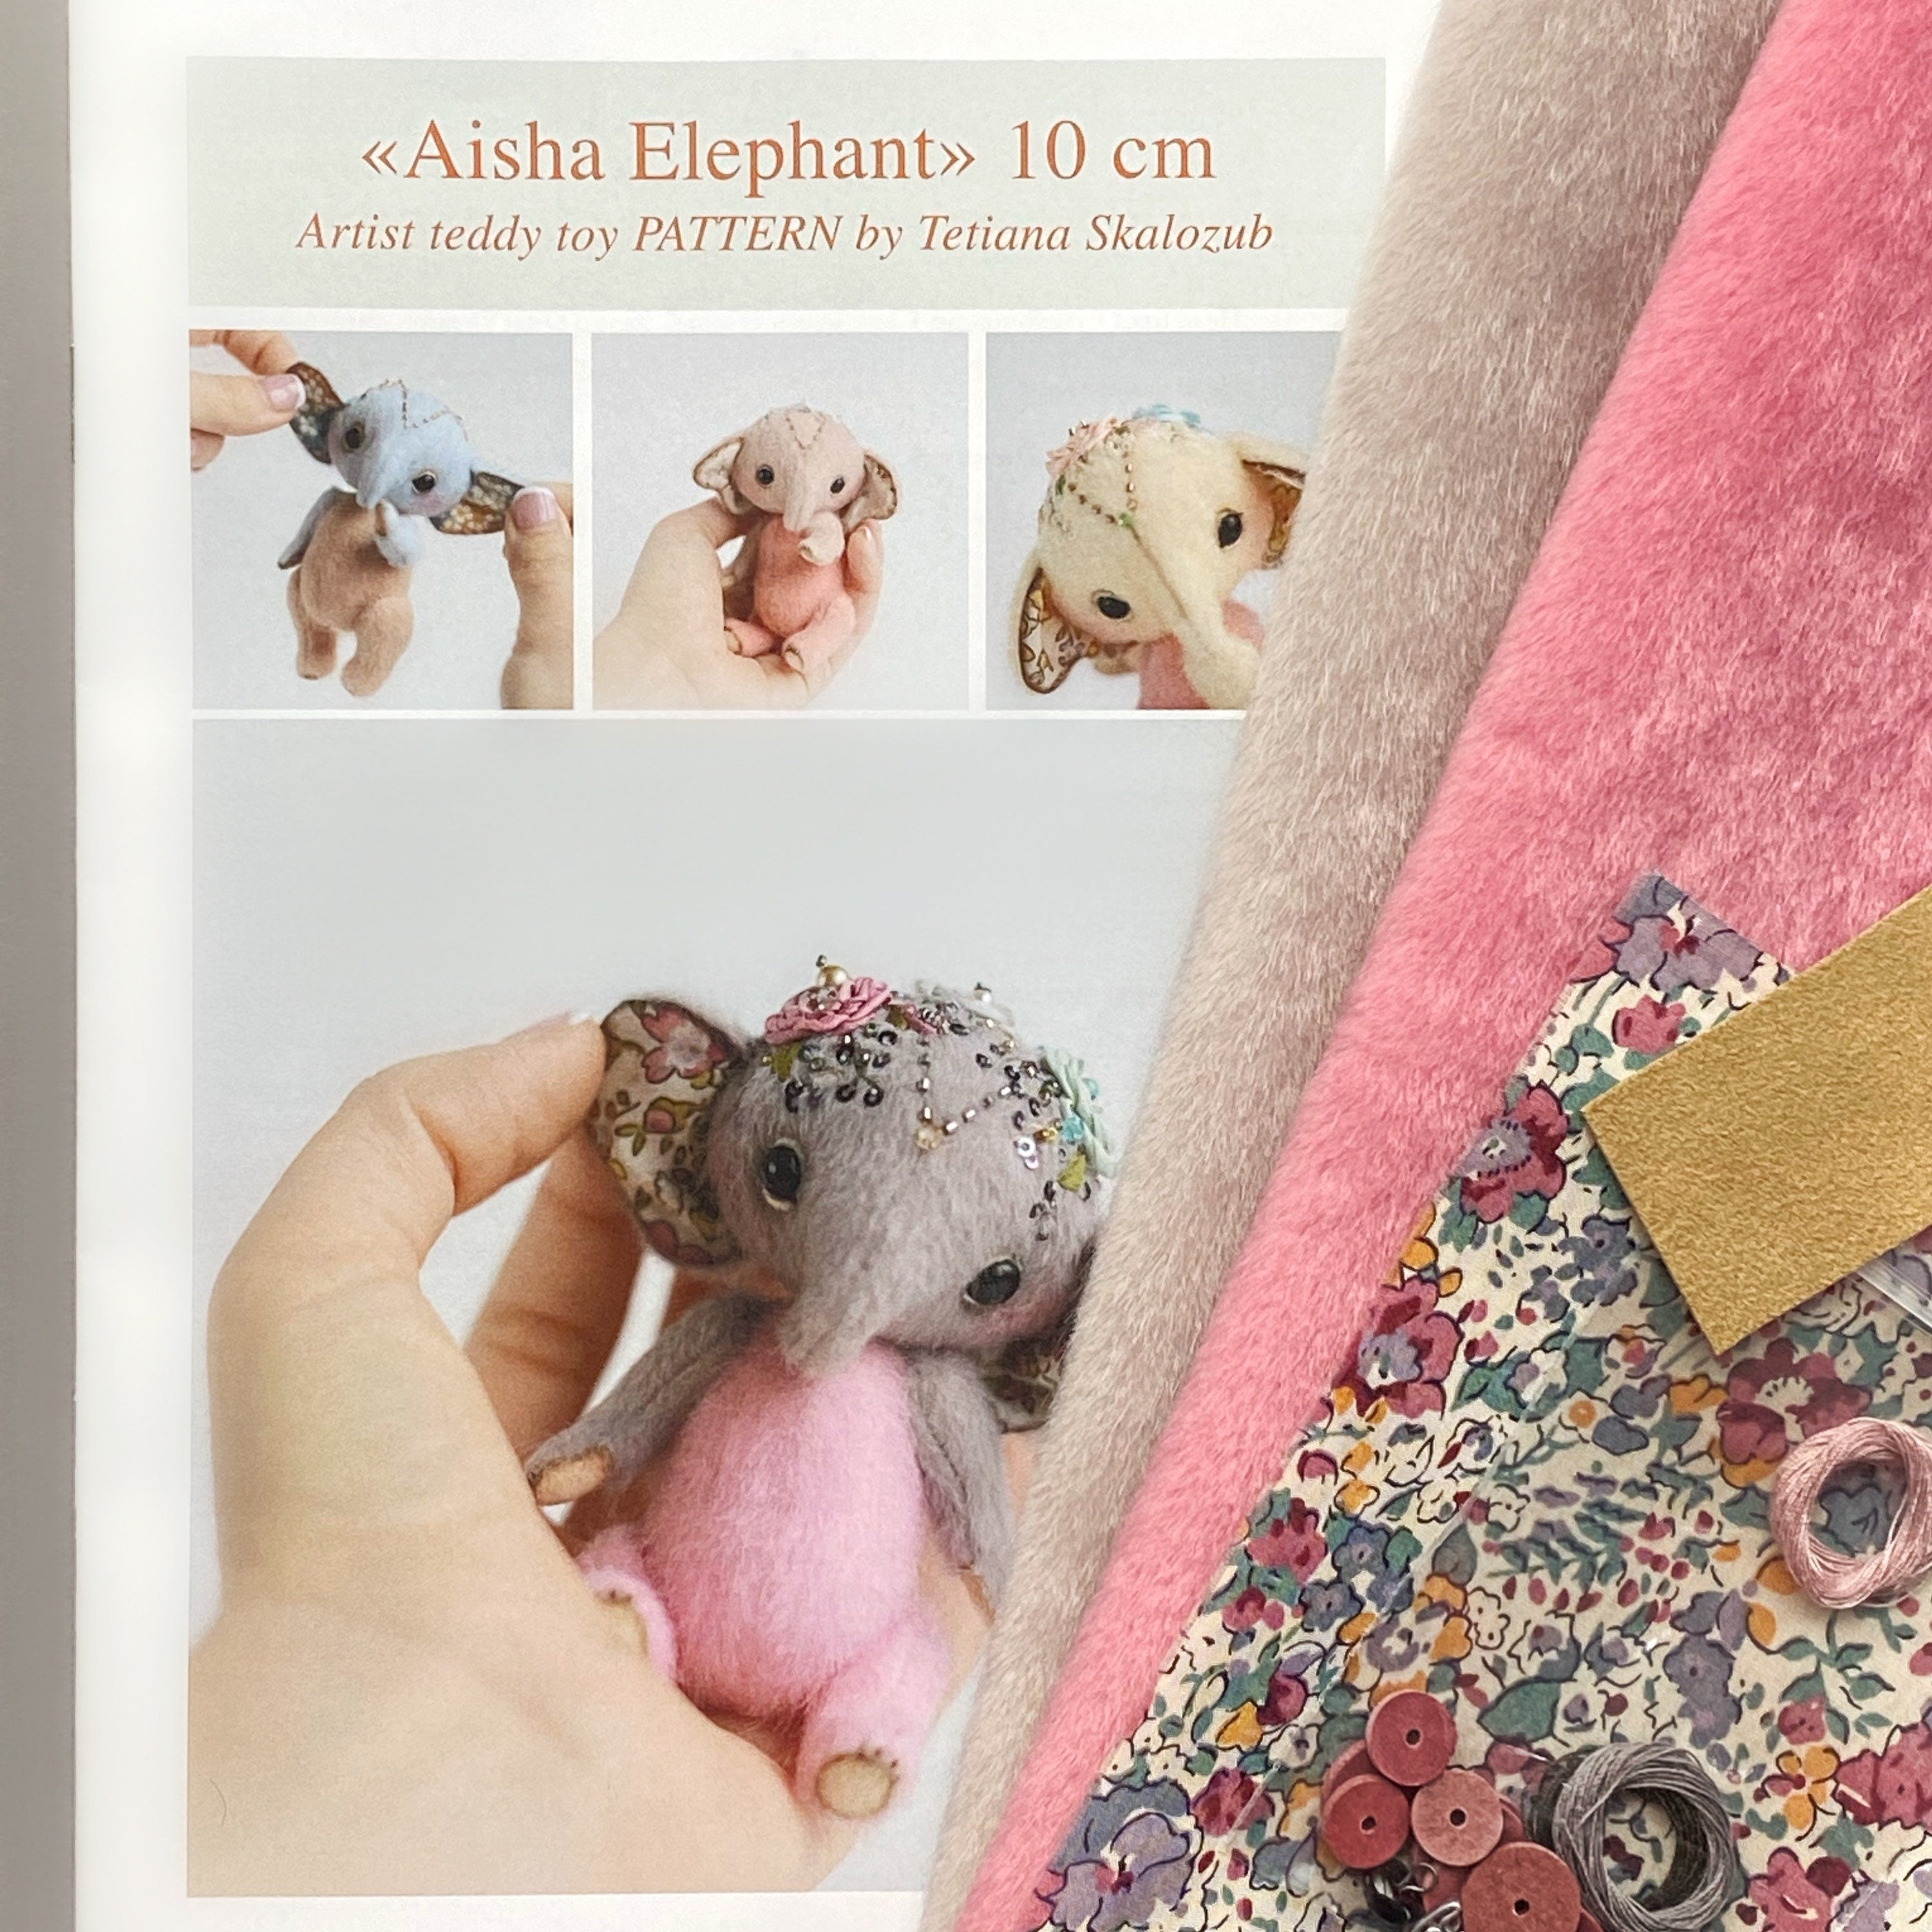 Elephant Aisha - Sewing KIT, stuffed toy craft kit, diy elephant teddy, cute toy tutorials, soft toy diy, stuffed animal pattern